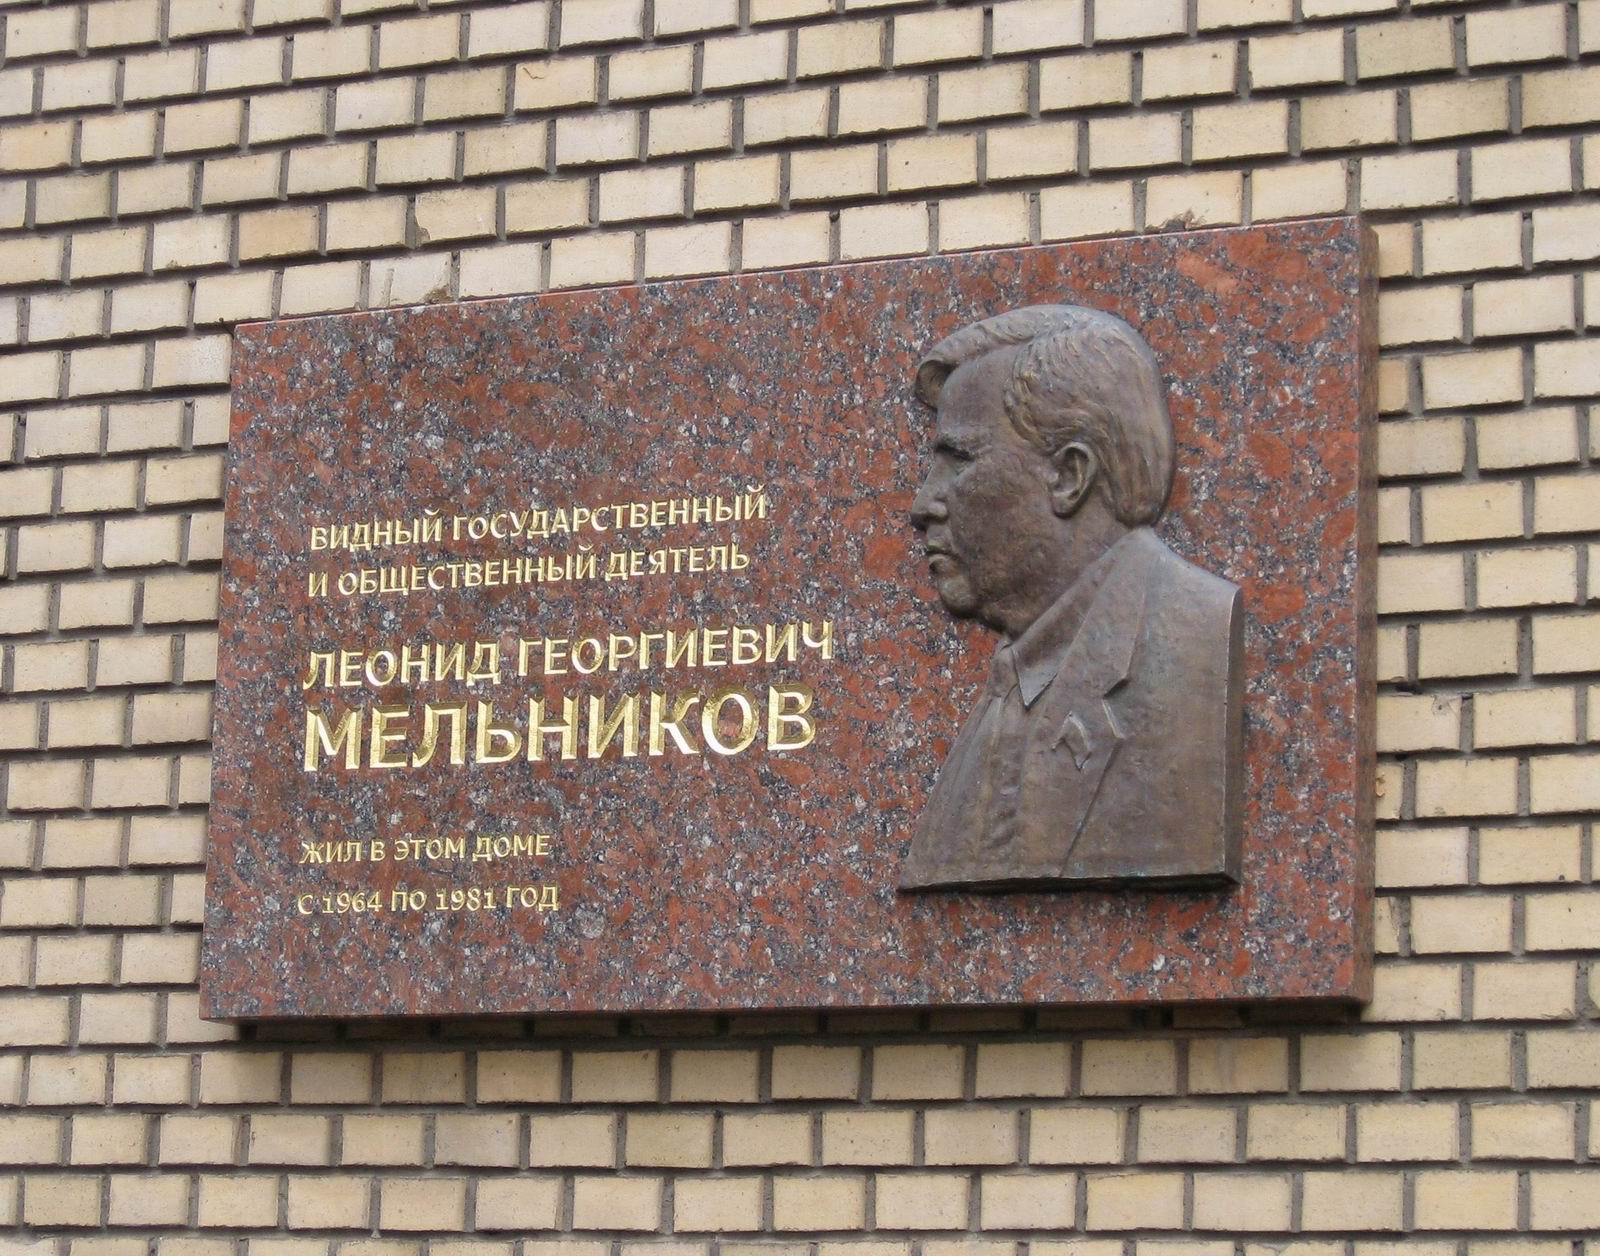 Мемориальная доска Мельникову Л.Г. (1906–1981), ск. И.С.Новиков, арх. А.К.Тихонов, в переулке Хользунова, дом 6, открыта в сентябре 2007.